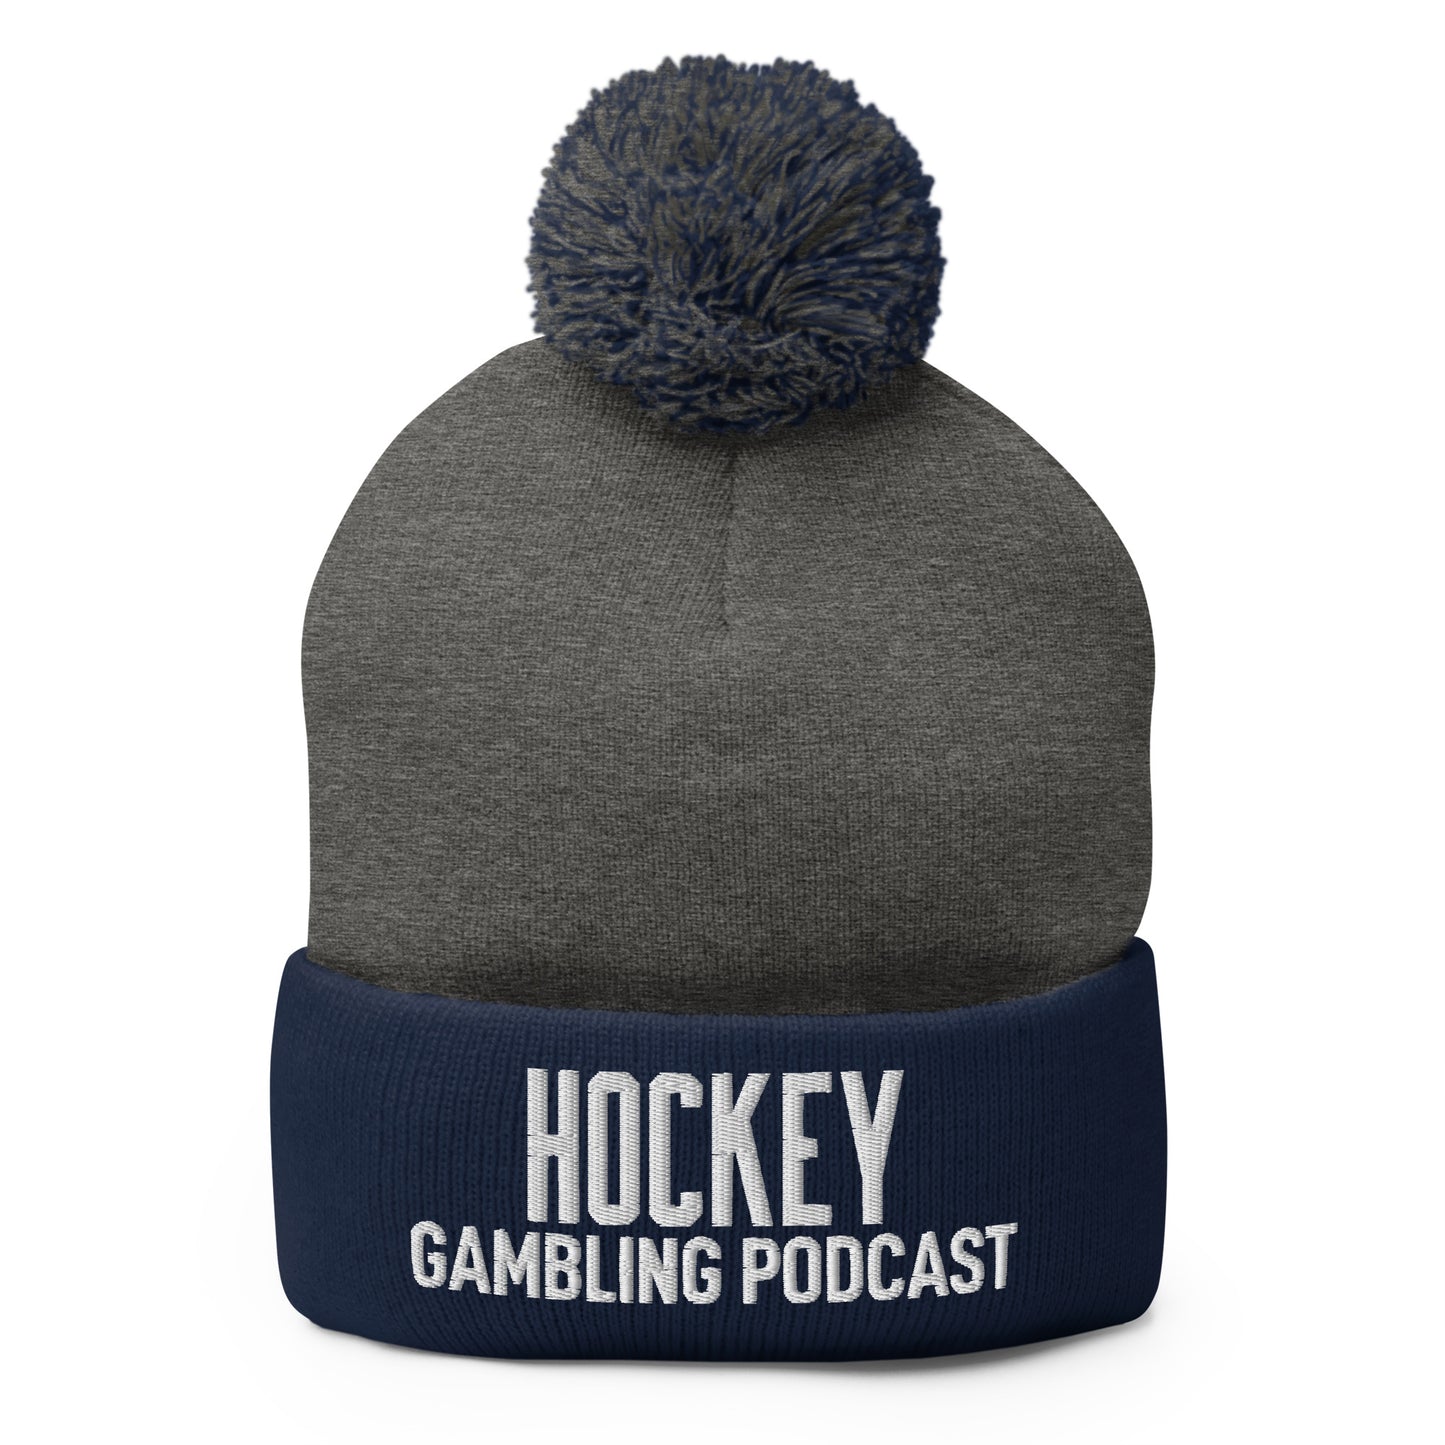 Hockey Gambling Podcast - Pom-Pom Beanie (White Logo)